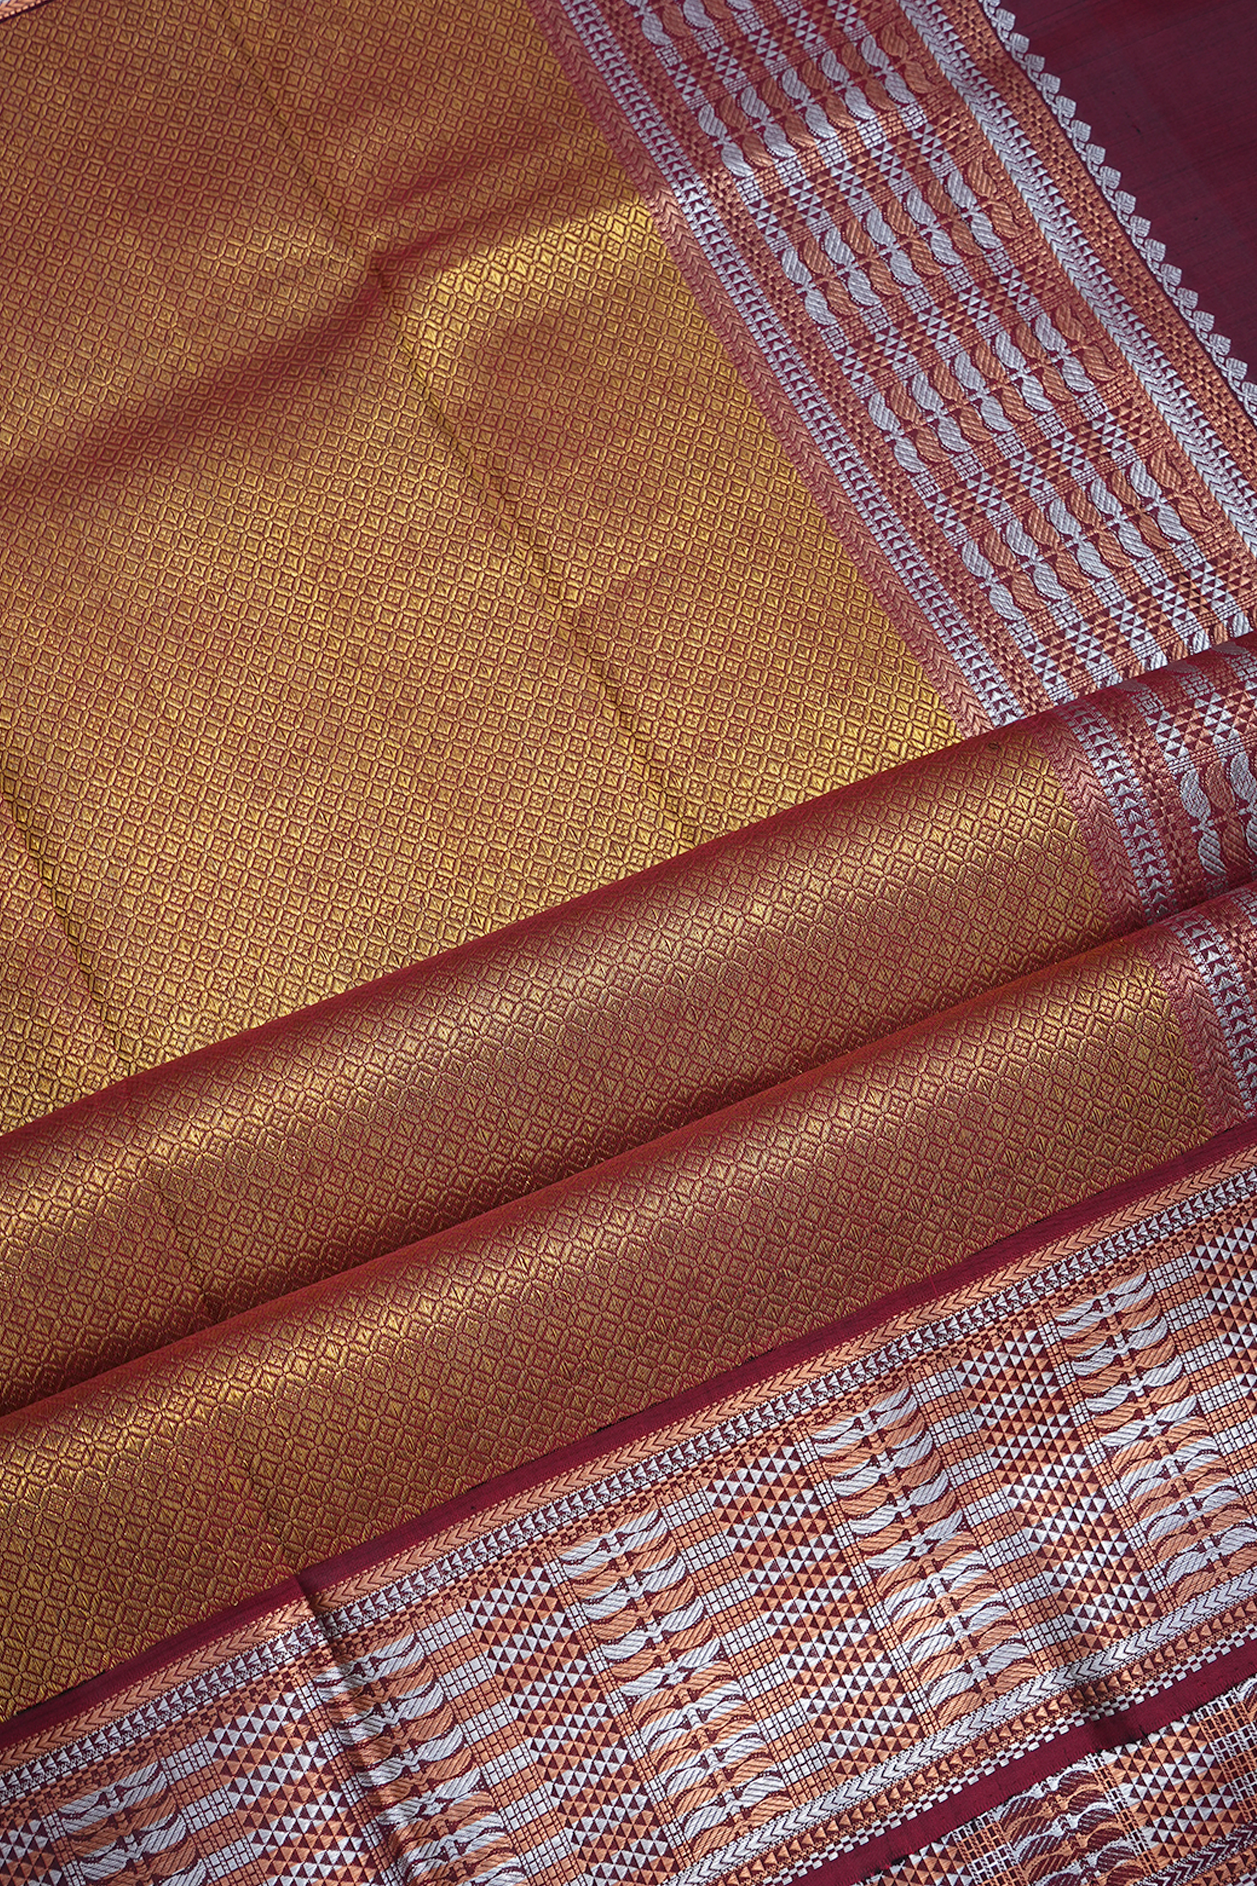 Pink & Blue Kanakavalli Kanjivaram Silk Saree 031-01-40297